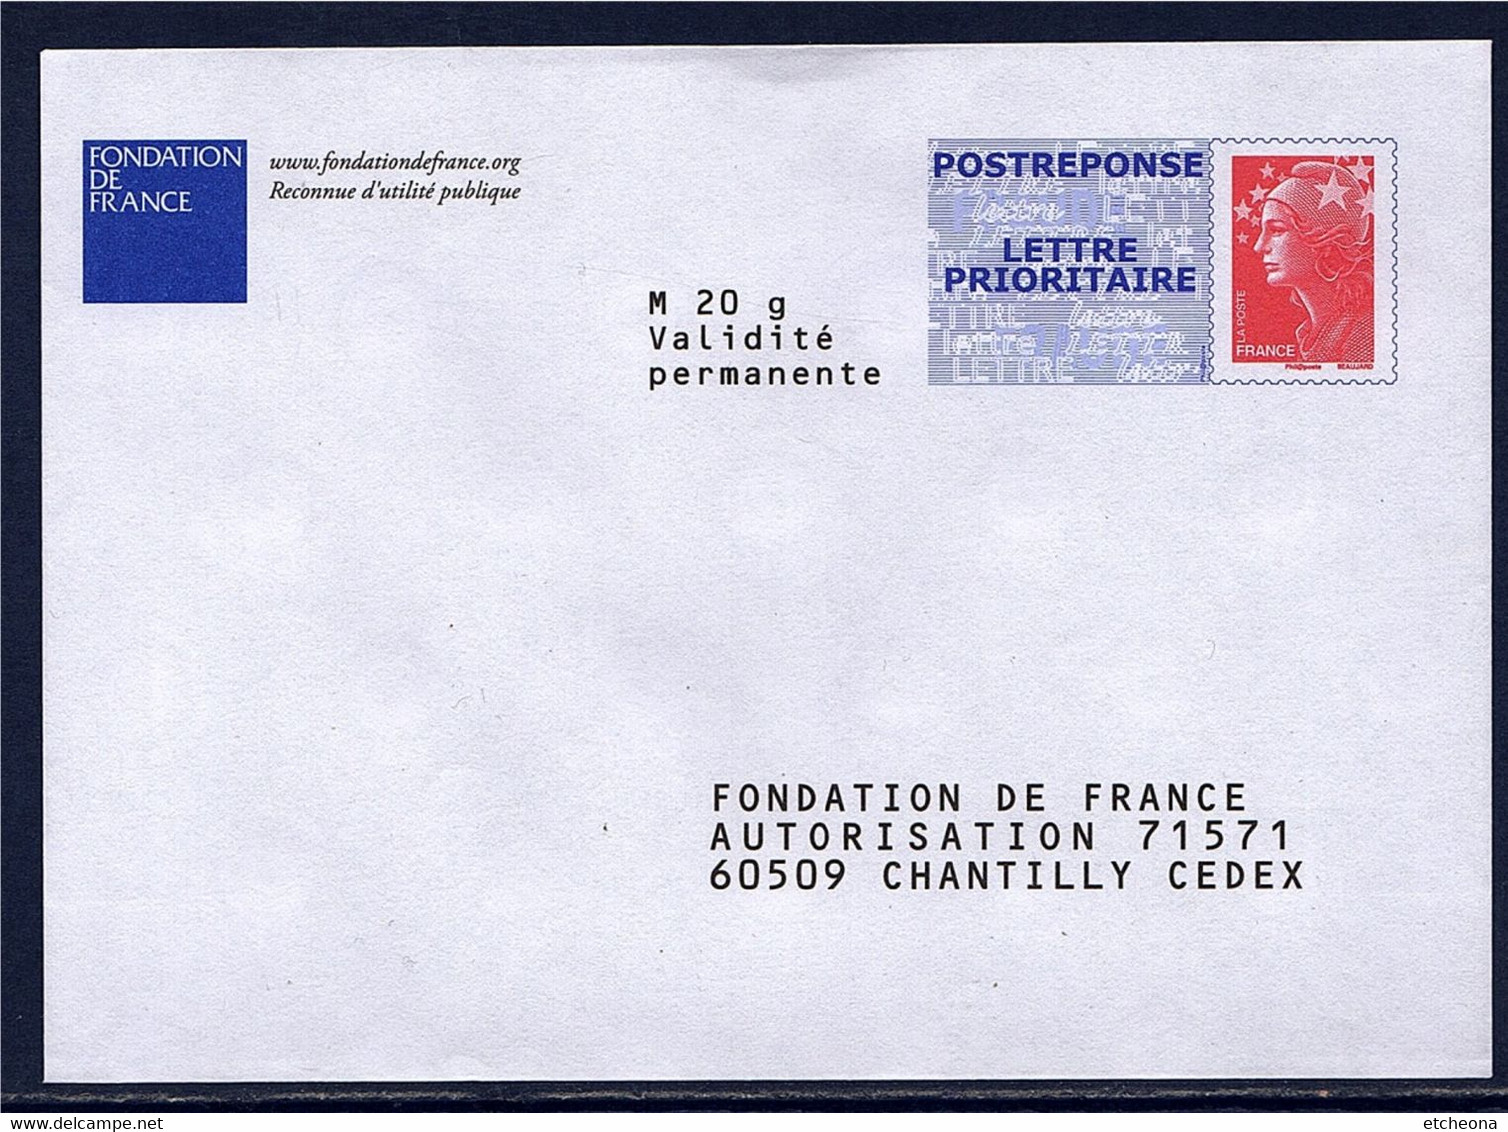 Fondation De France Enveloppe Postréponse Marianne Beaujard Neuve TVP LP Lot 09P344 Type N°4230 - PAP: Antwoord